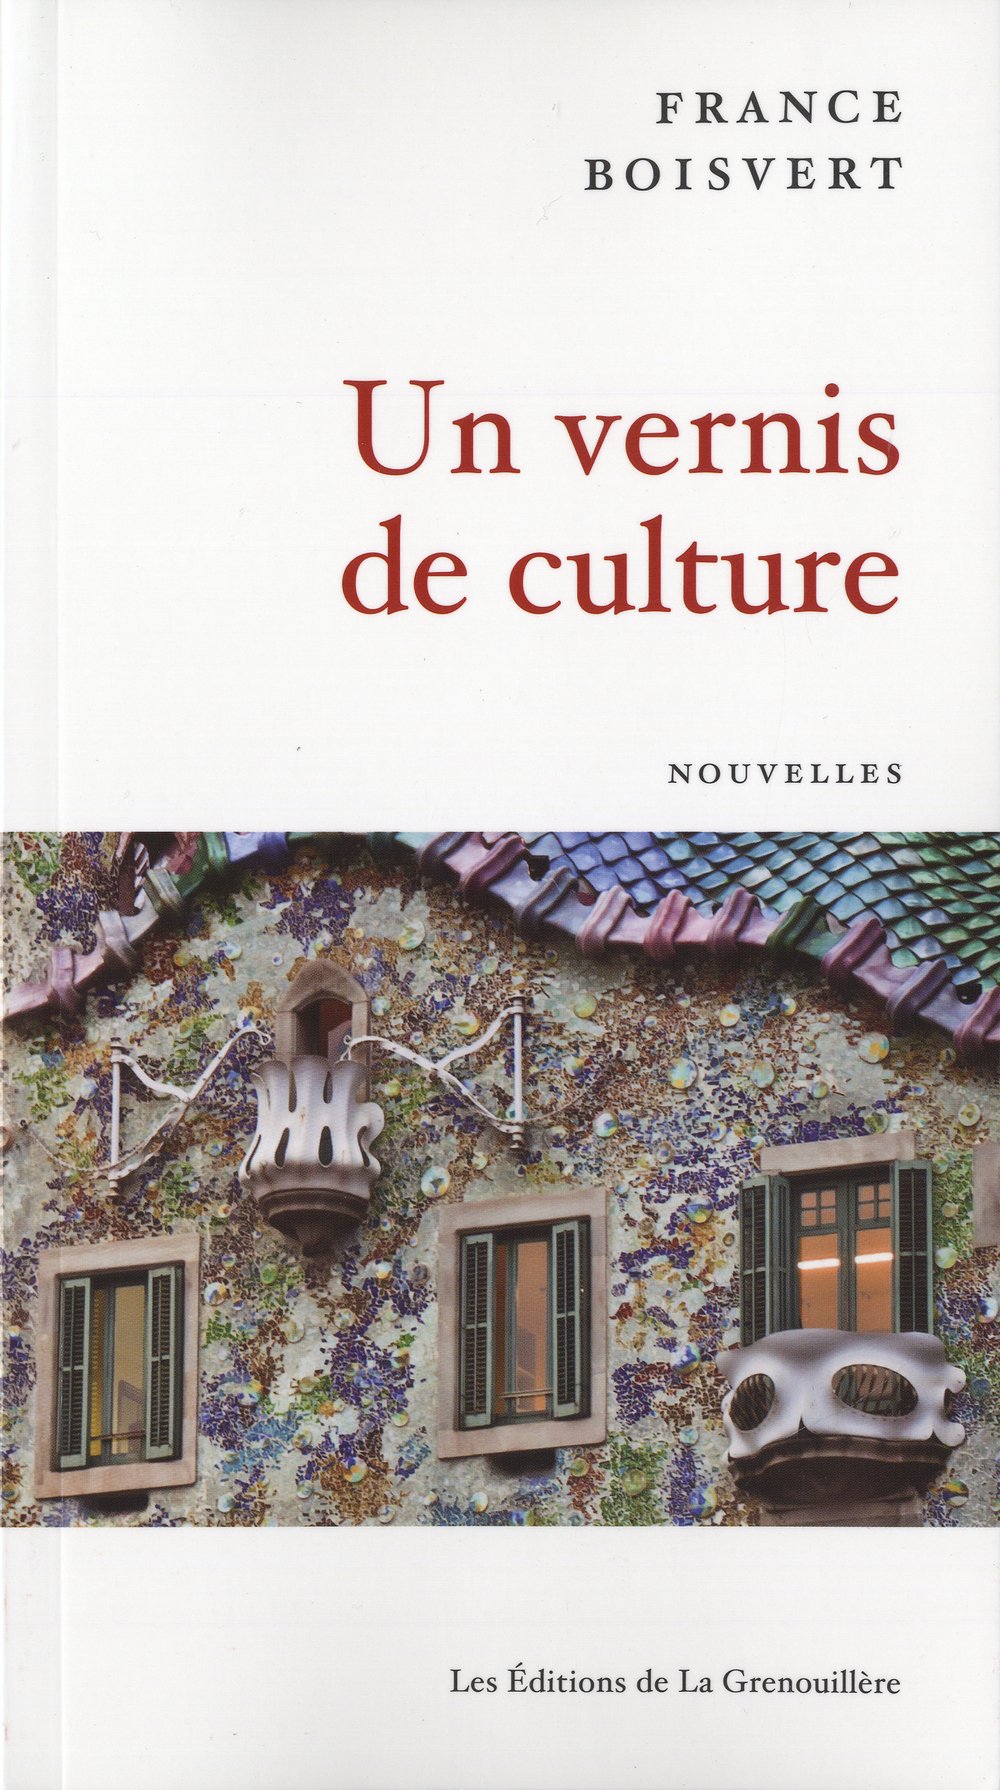 Livre ISBN 2923949064 Un vernis de culture (France Boisvert)